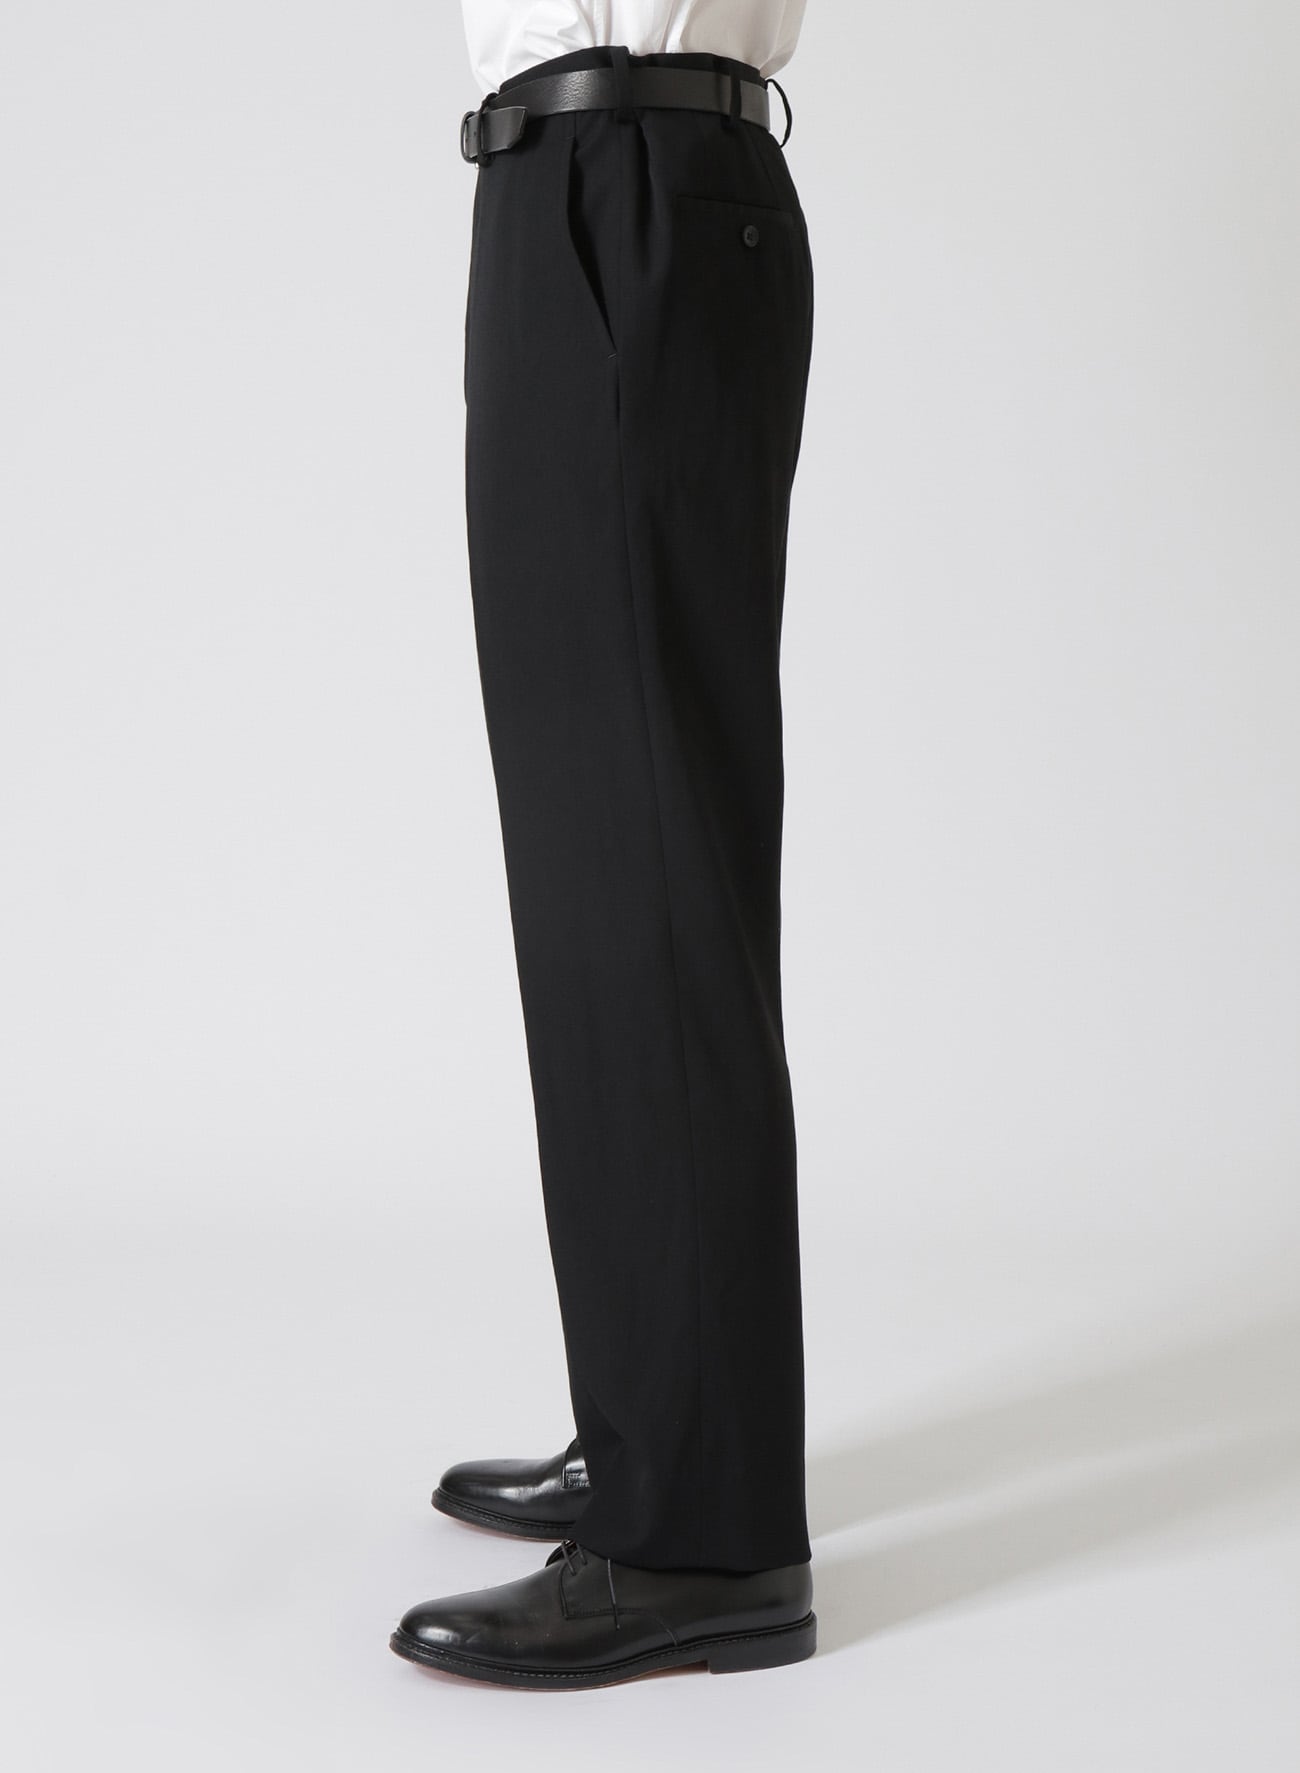 NYDJ - 'Lift & Tuck' Bootcut Jeans -Size 8 US suit 12AU | eBay